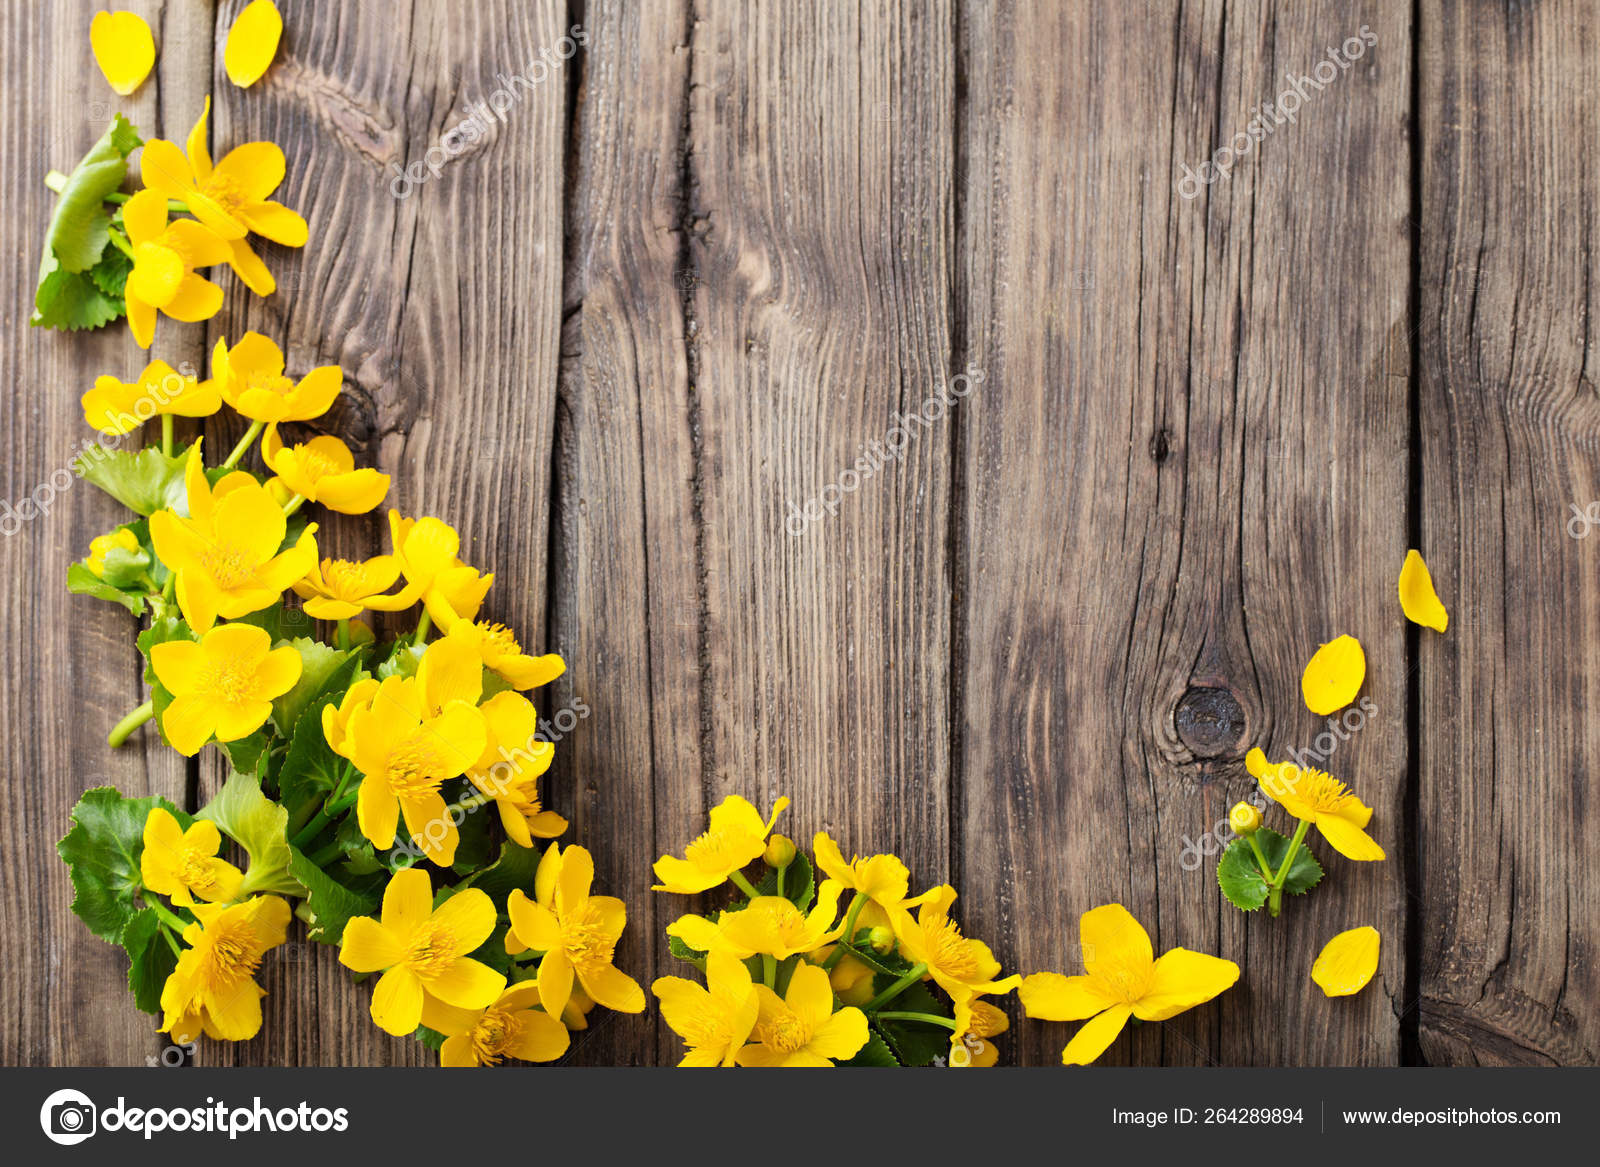 Yellow spring flowers on dark wooden background Stock Photo by ©Kruchenkova  264289894